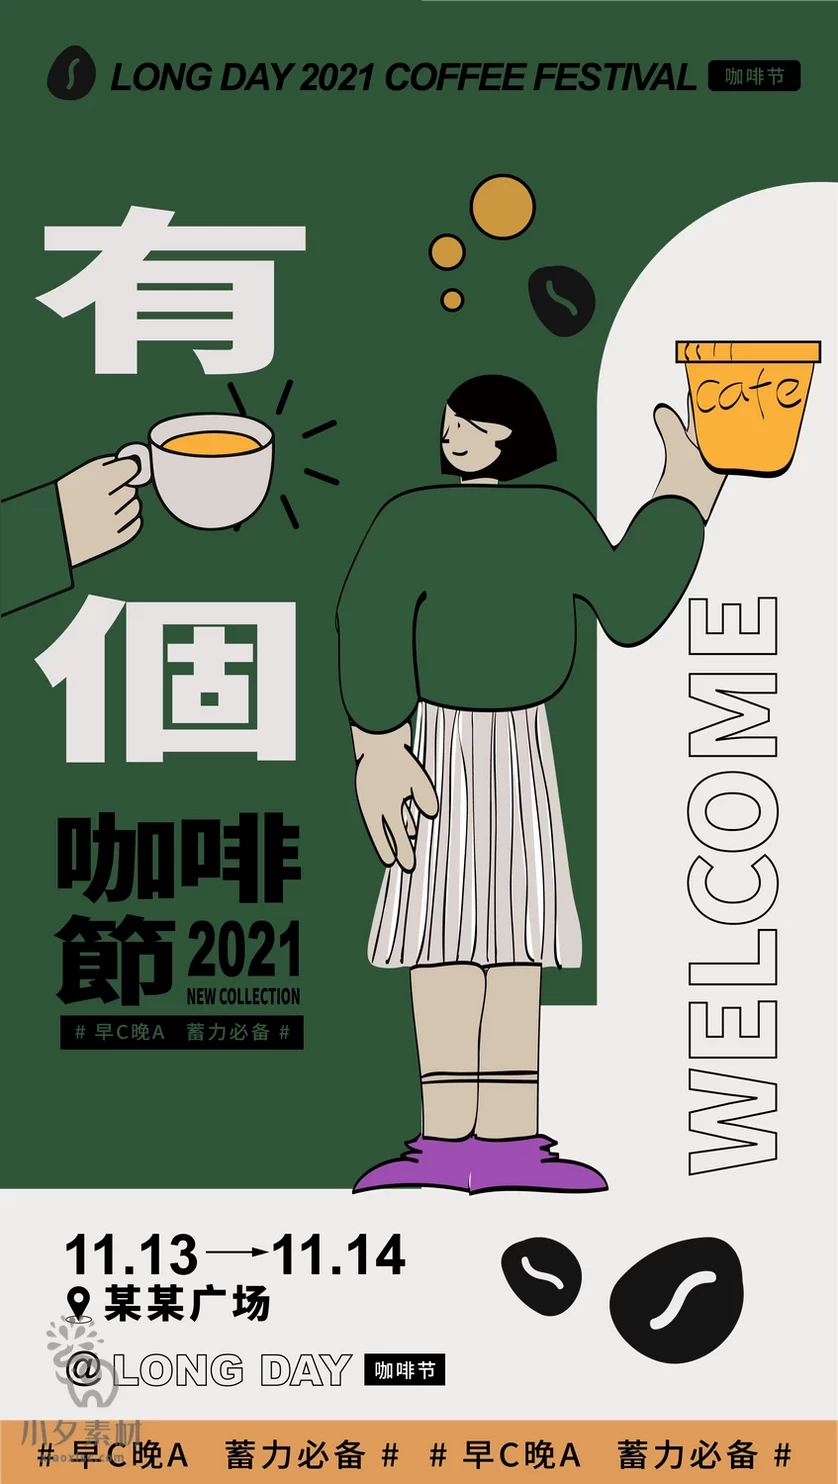 潮流创意咖啡饮品艺术节活动宣传促销海报展板模板AI矢量设计素材【001】